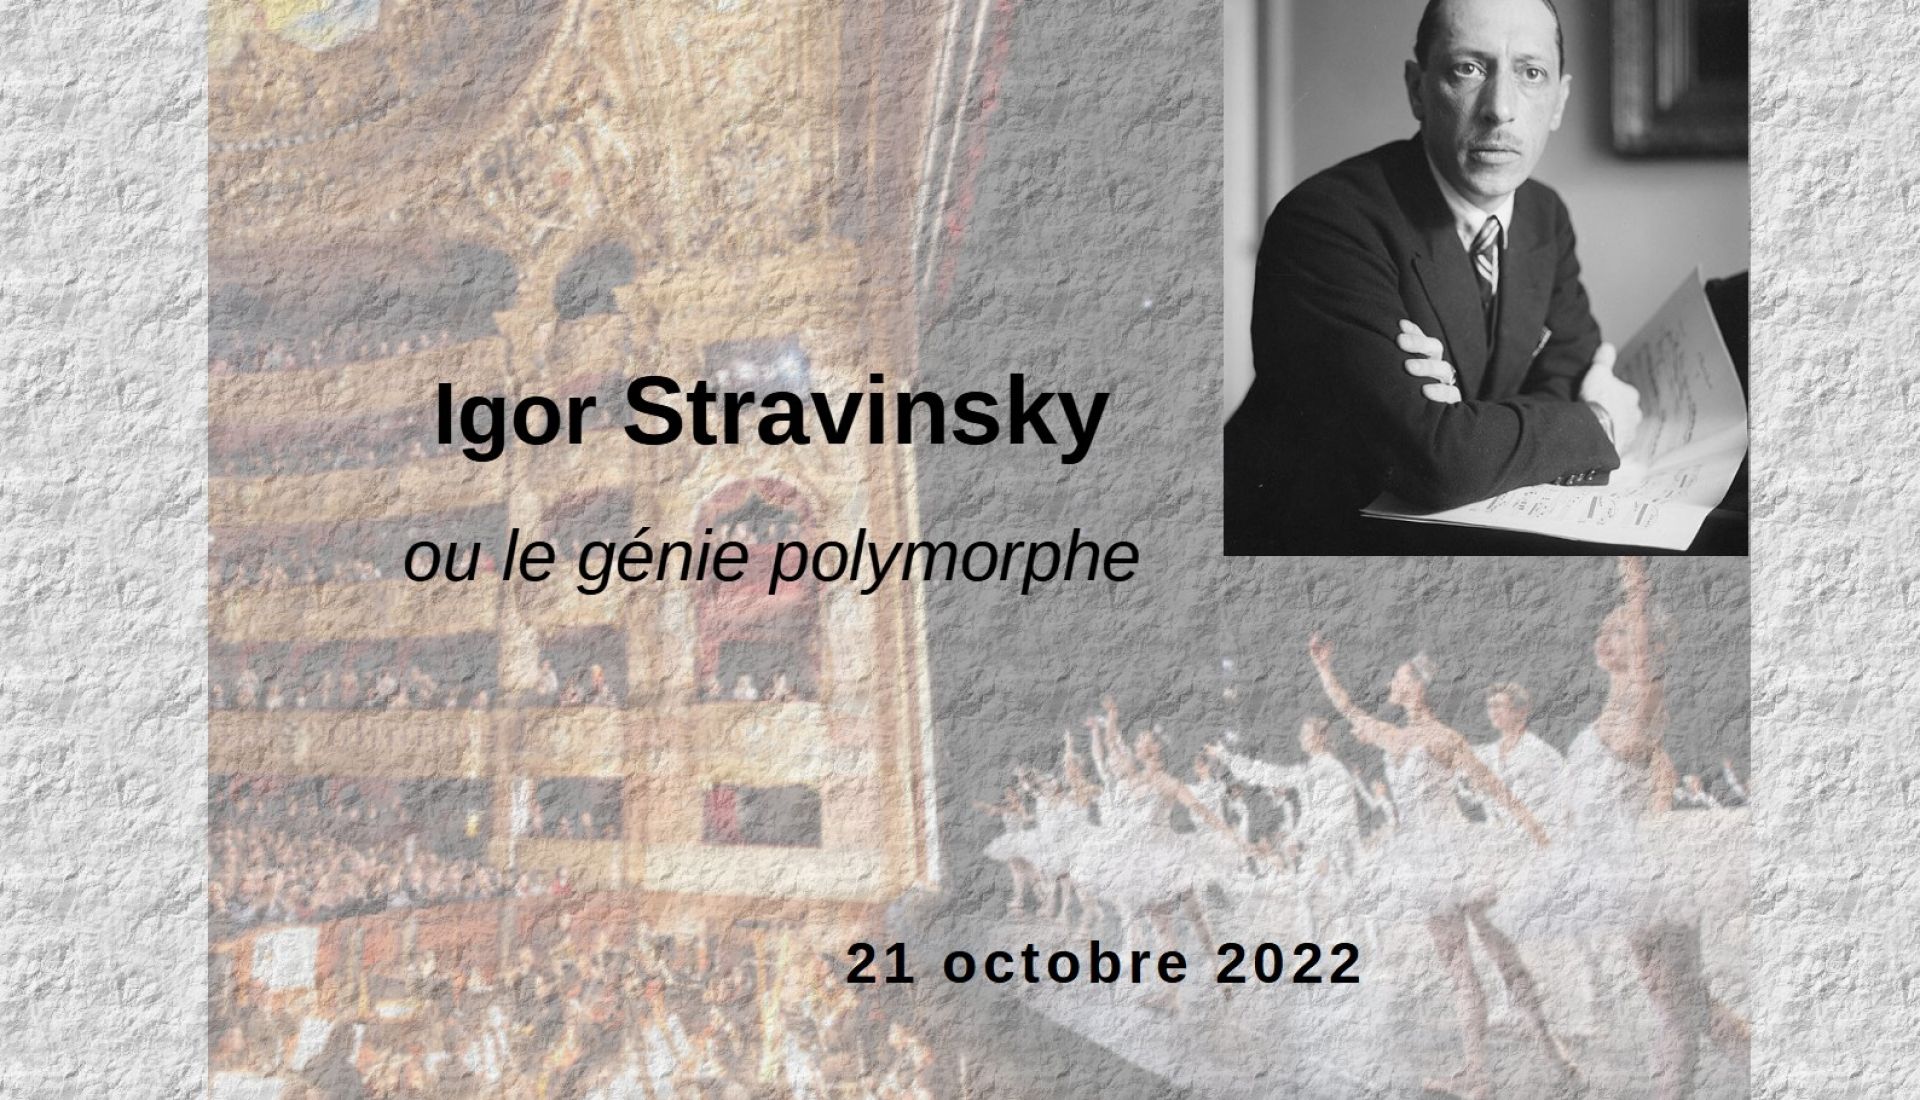 Igor STRAVINSKY- génie polymorphe